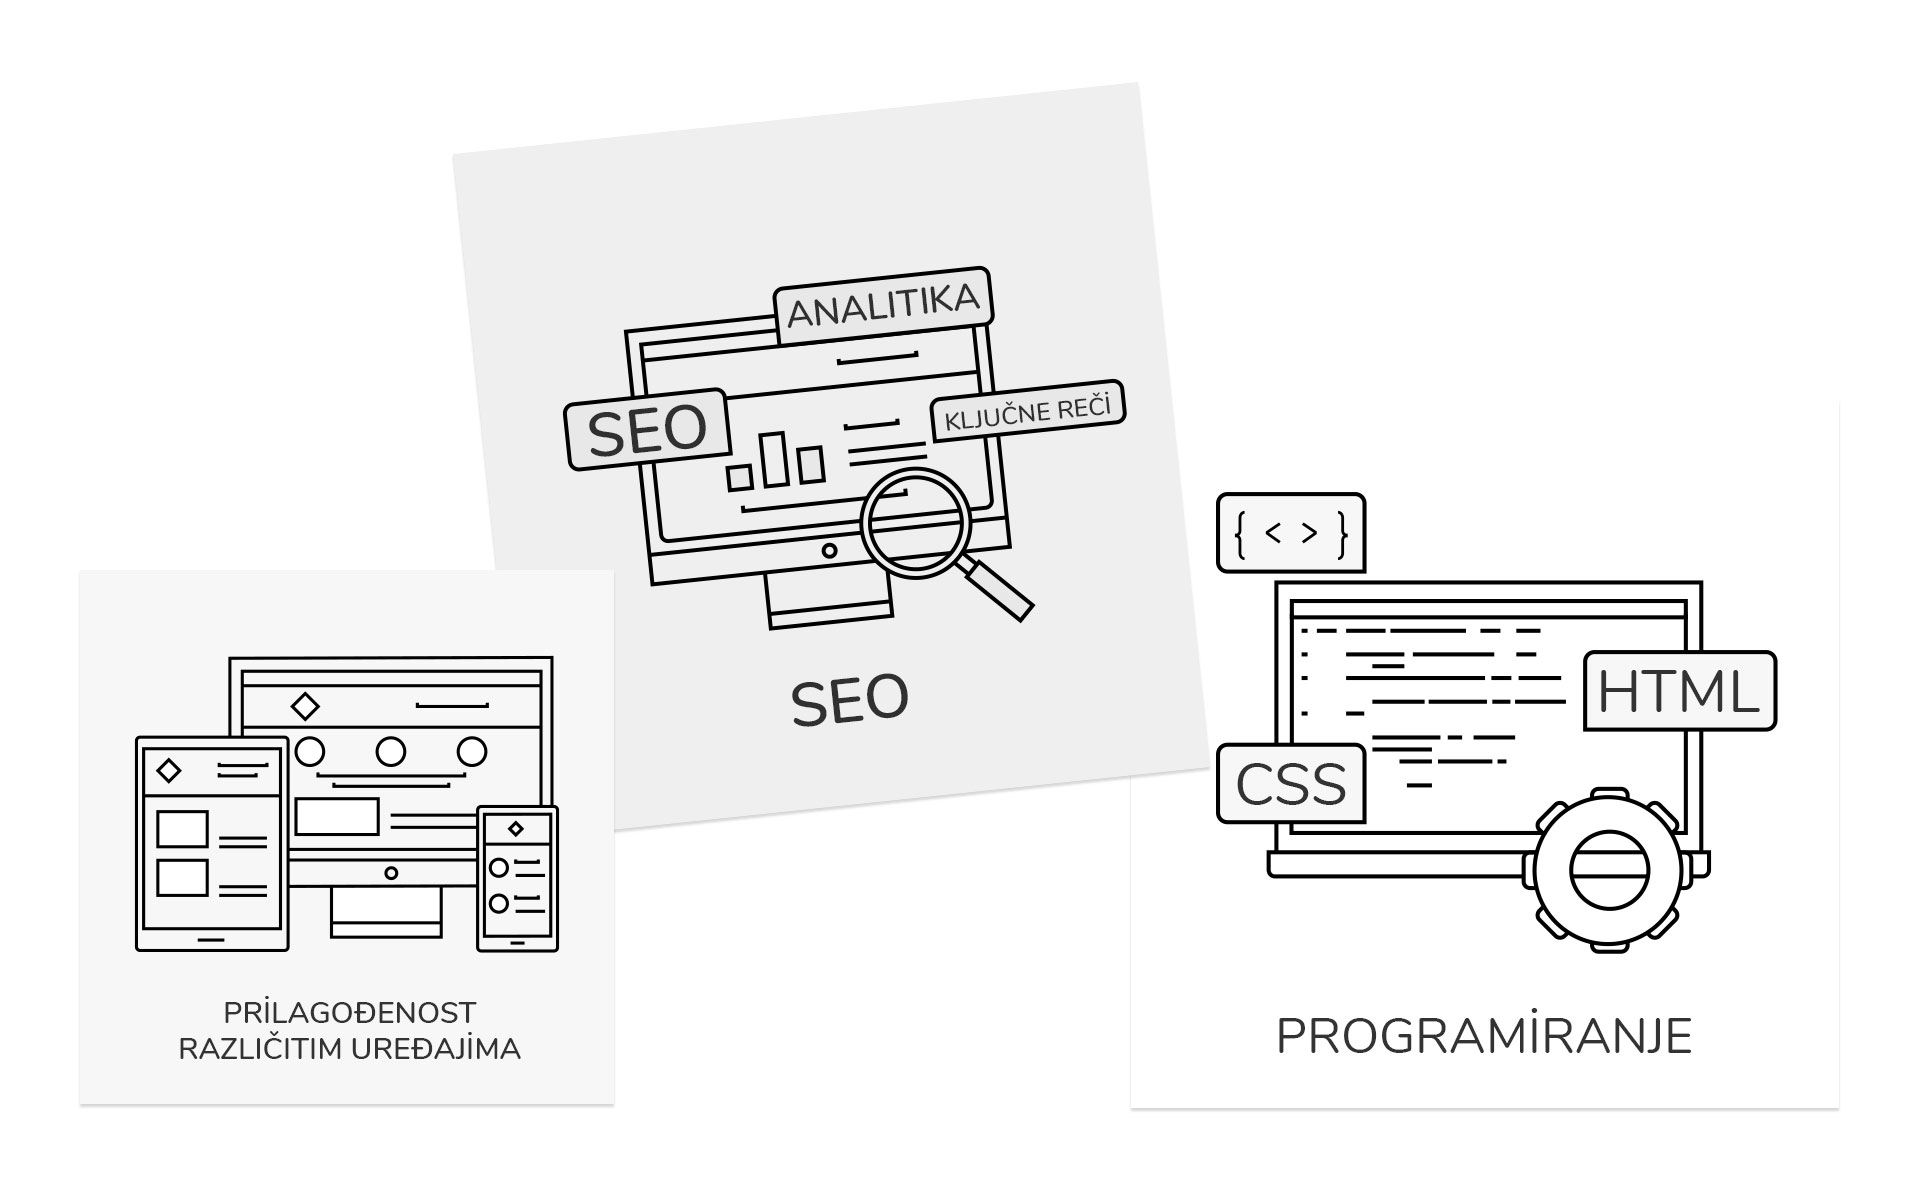 SEO web design zahteva prilagođenost uređajima, poznavanje programiranja i pretragu ključnih reči.